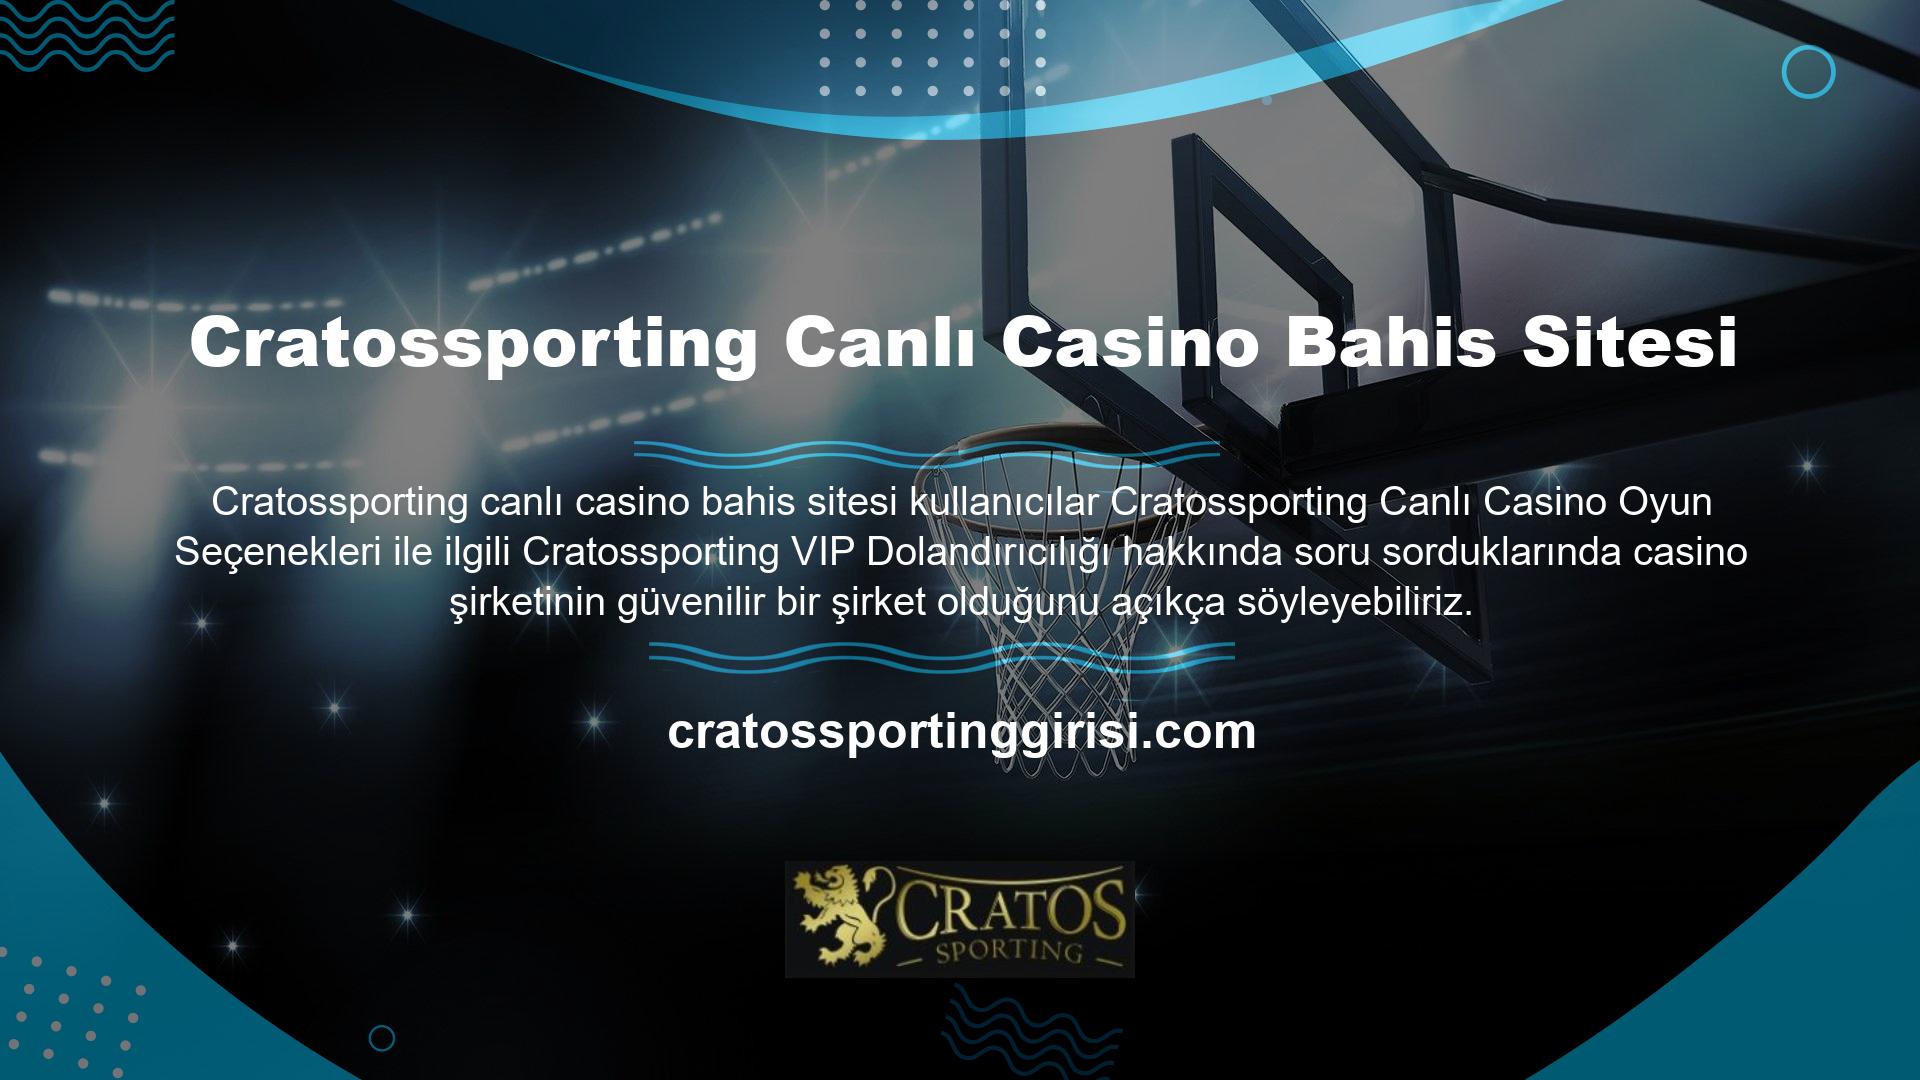 Cratossporting bahis sitesi, lisansı ve geçerliliği nedeniyle oyun sektörünün lider bahis platformudur